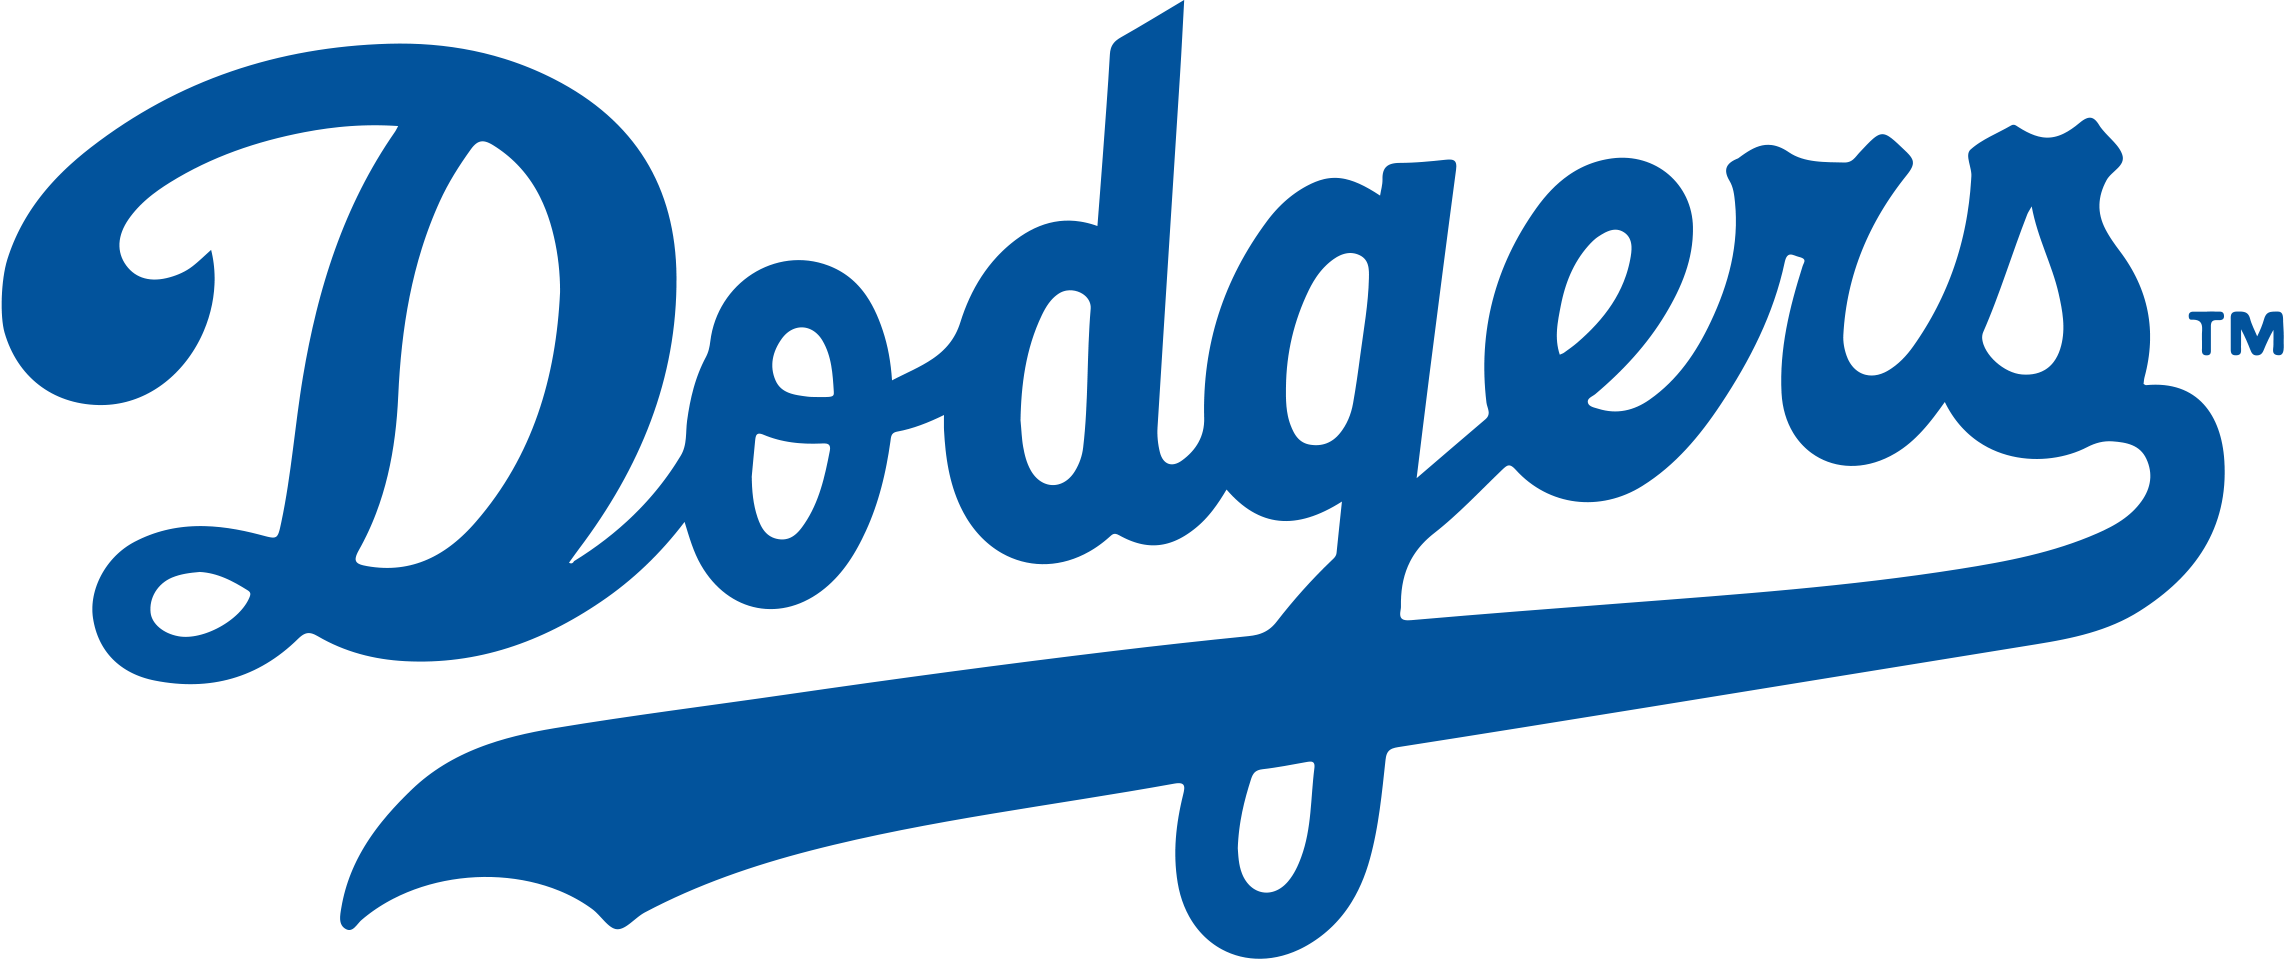 Dodgers Logo PNG Image